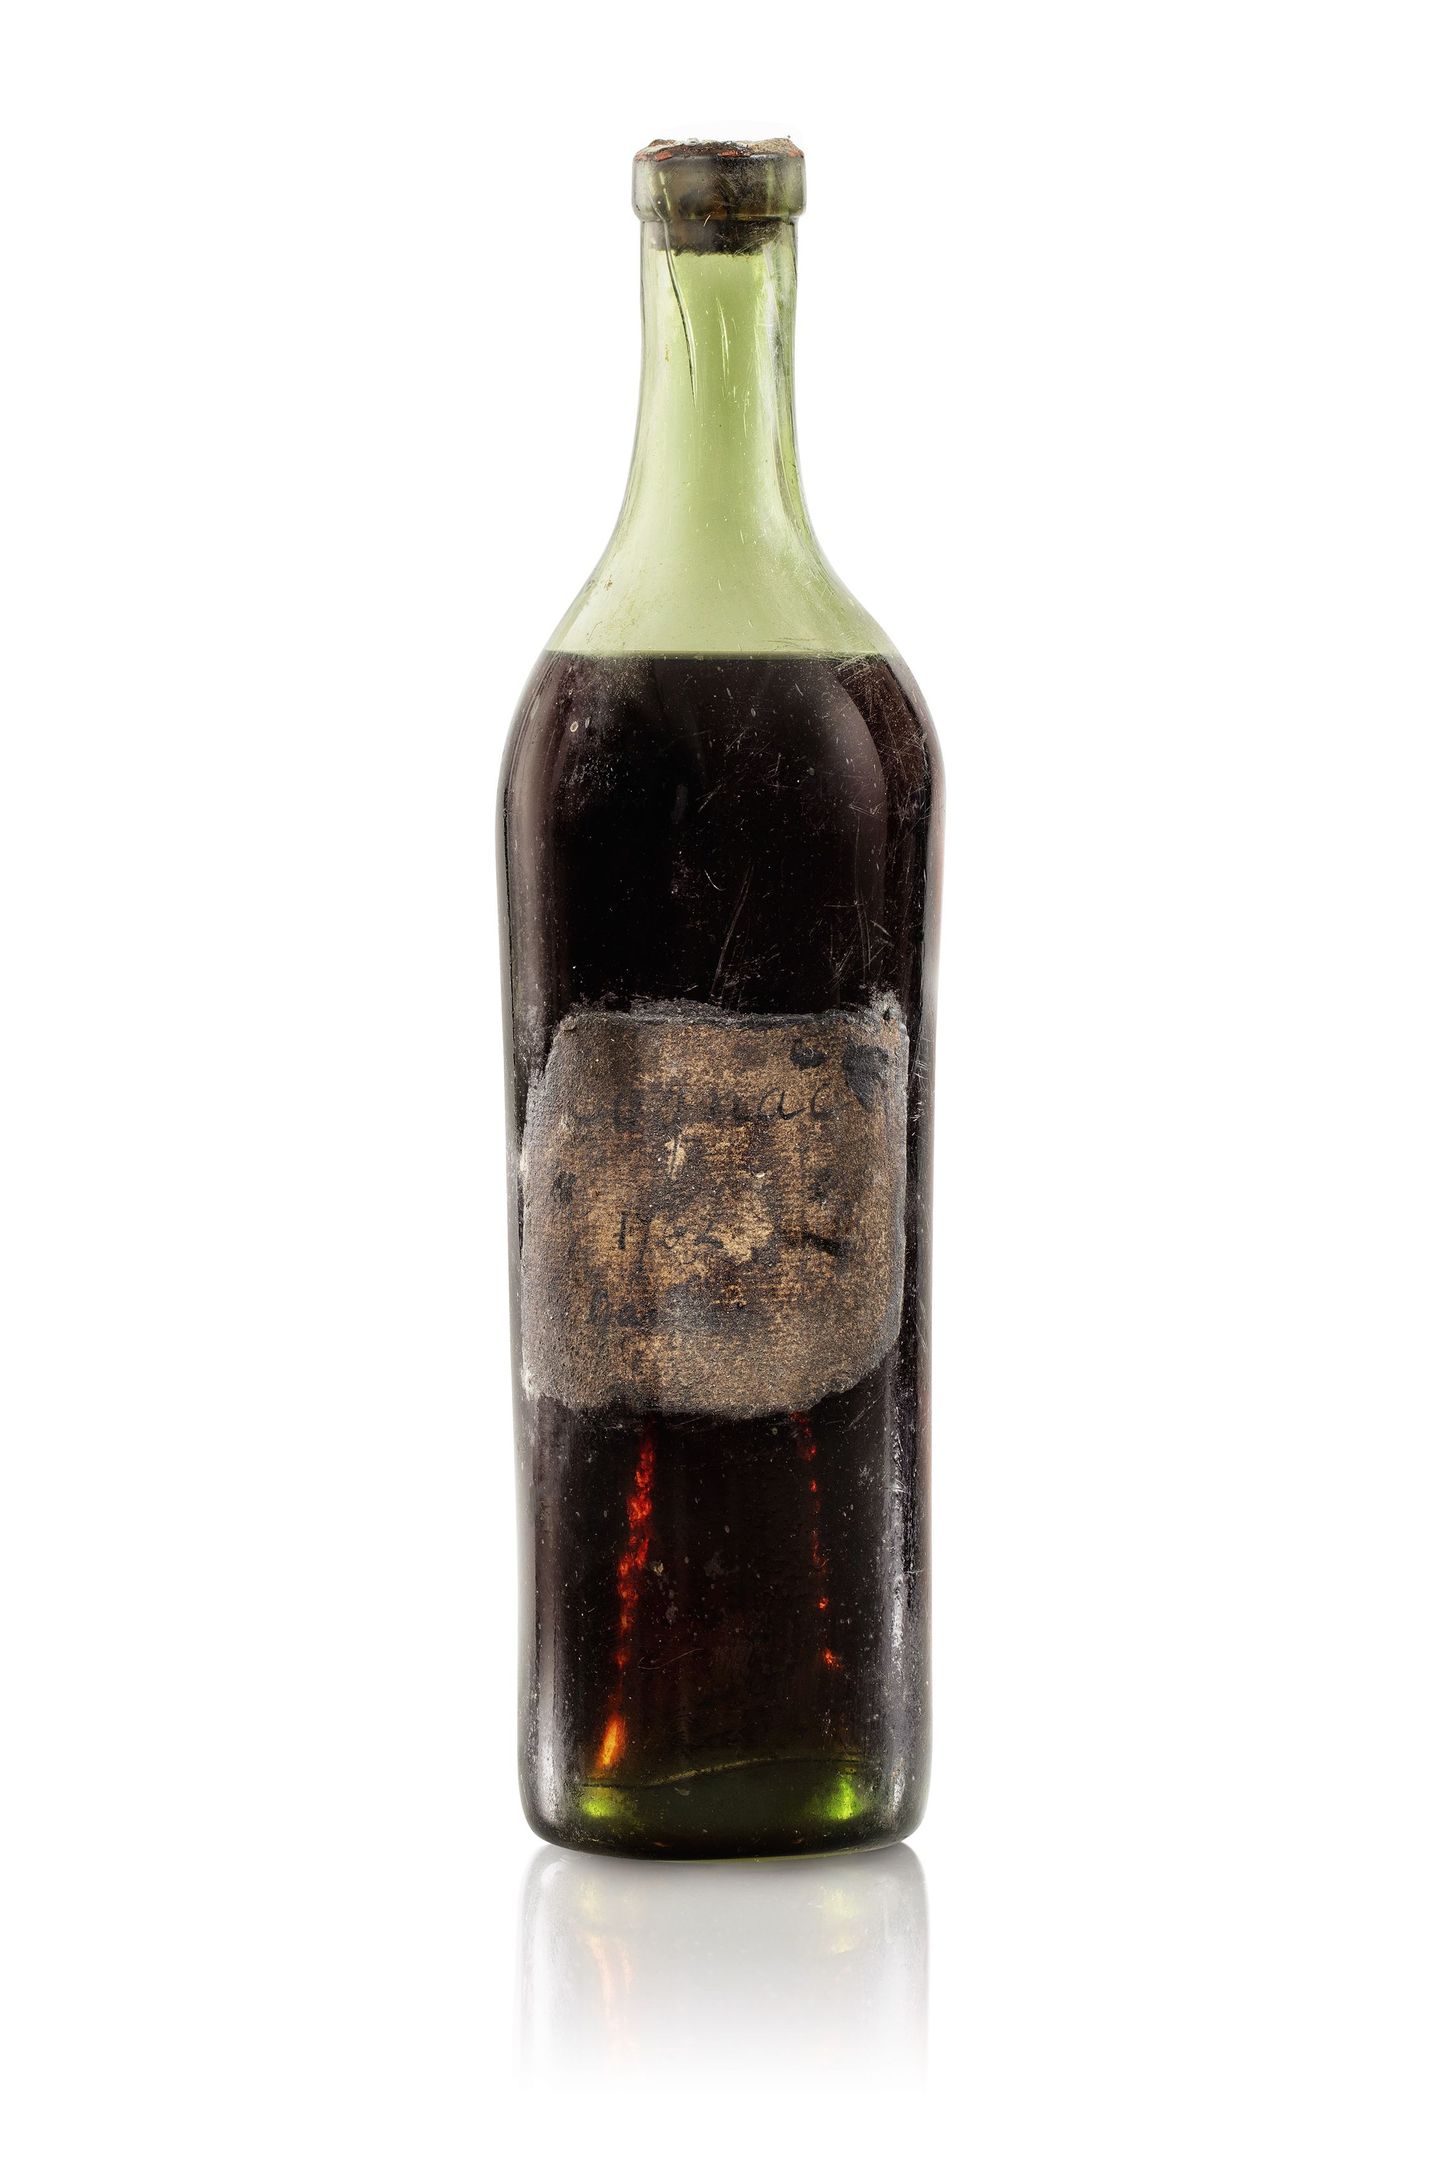 Sotheby oskjonimajas müüdi 28. mail pudel üliharuldast Gautier konjalit, mis pärineb aastast 1762. Pudeli hinnaks kujunes 118,580 Suurbritannia naela.